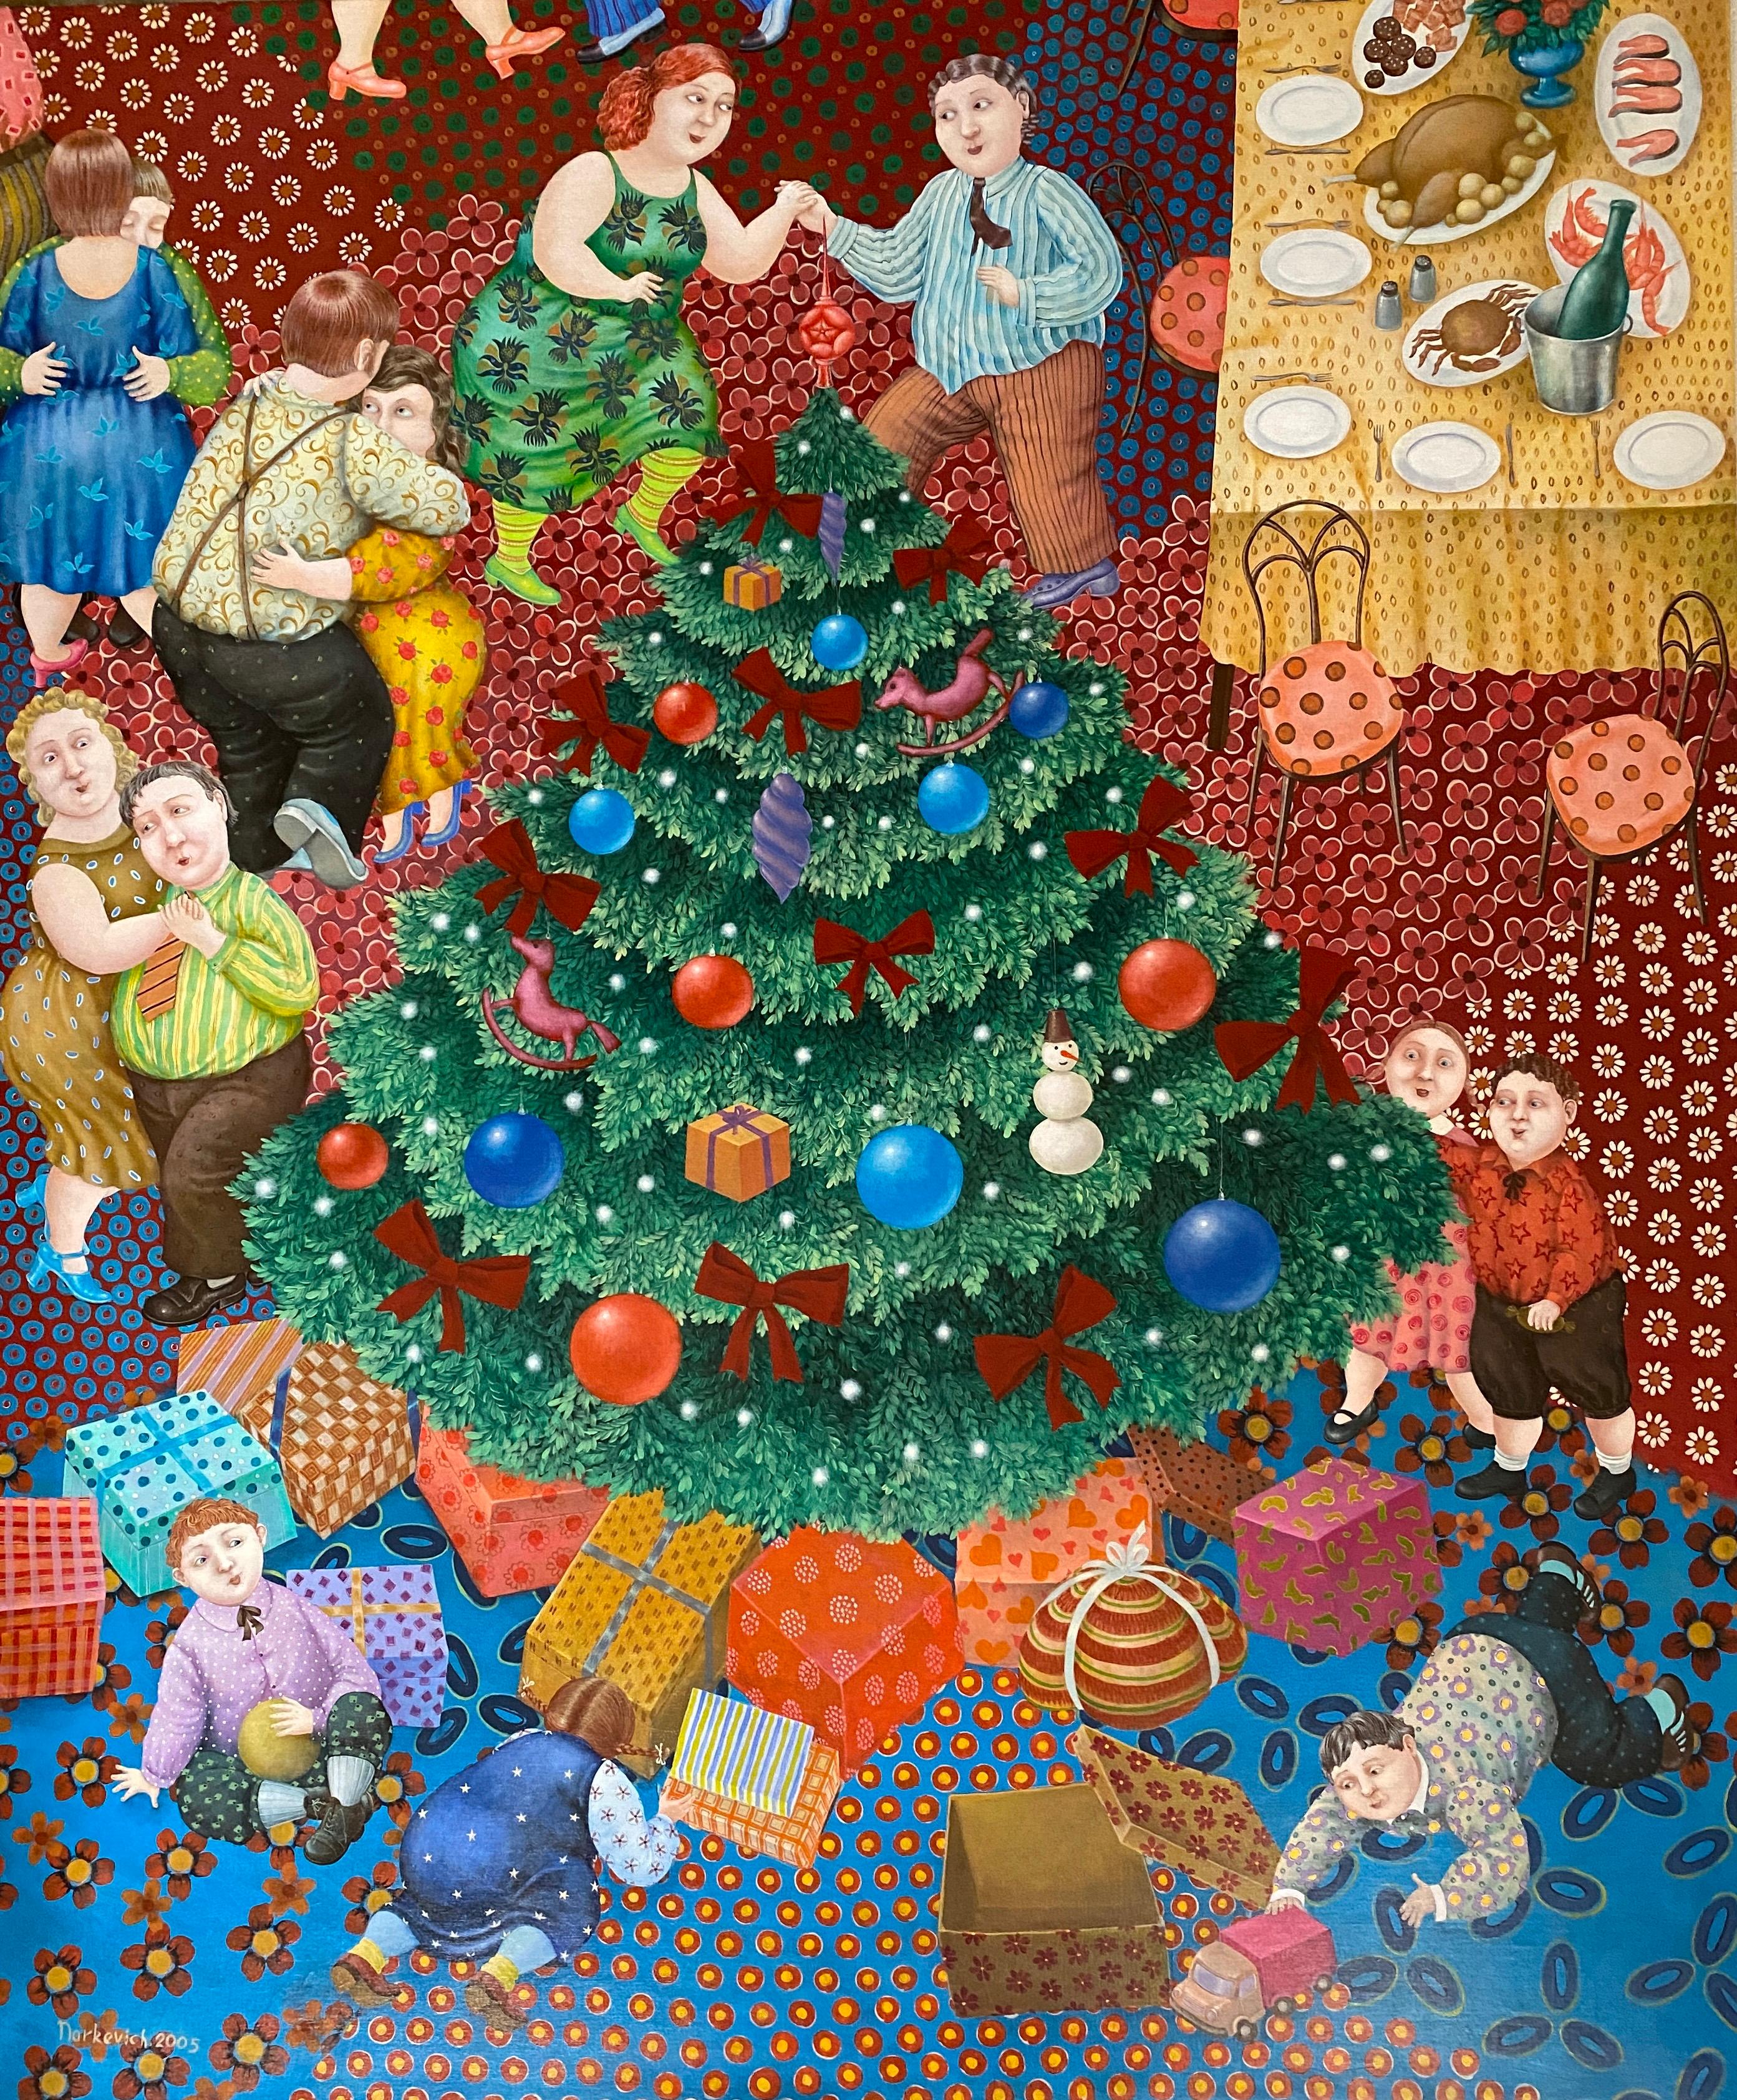 Christmas (La Navidad). Fun family scene around the Christmas tree. 